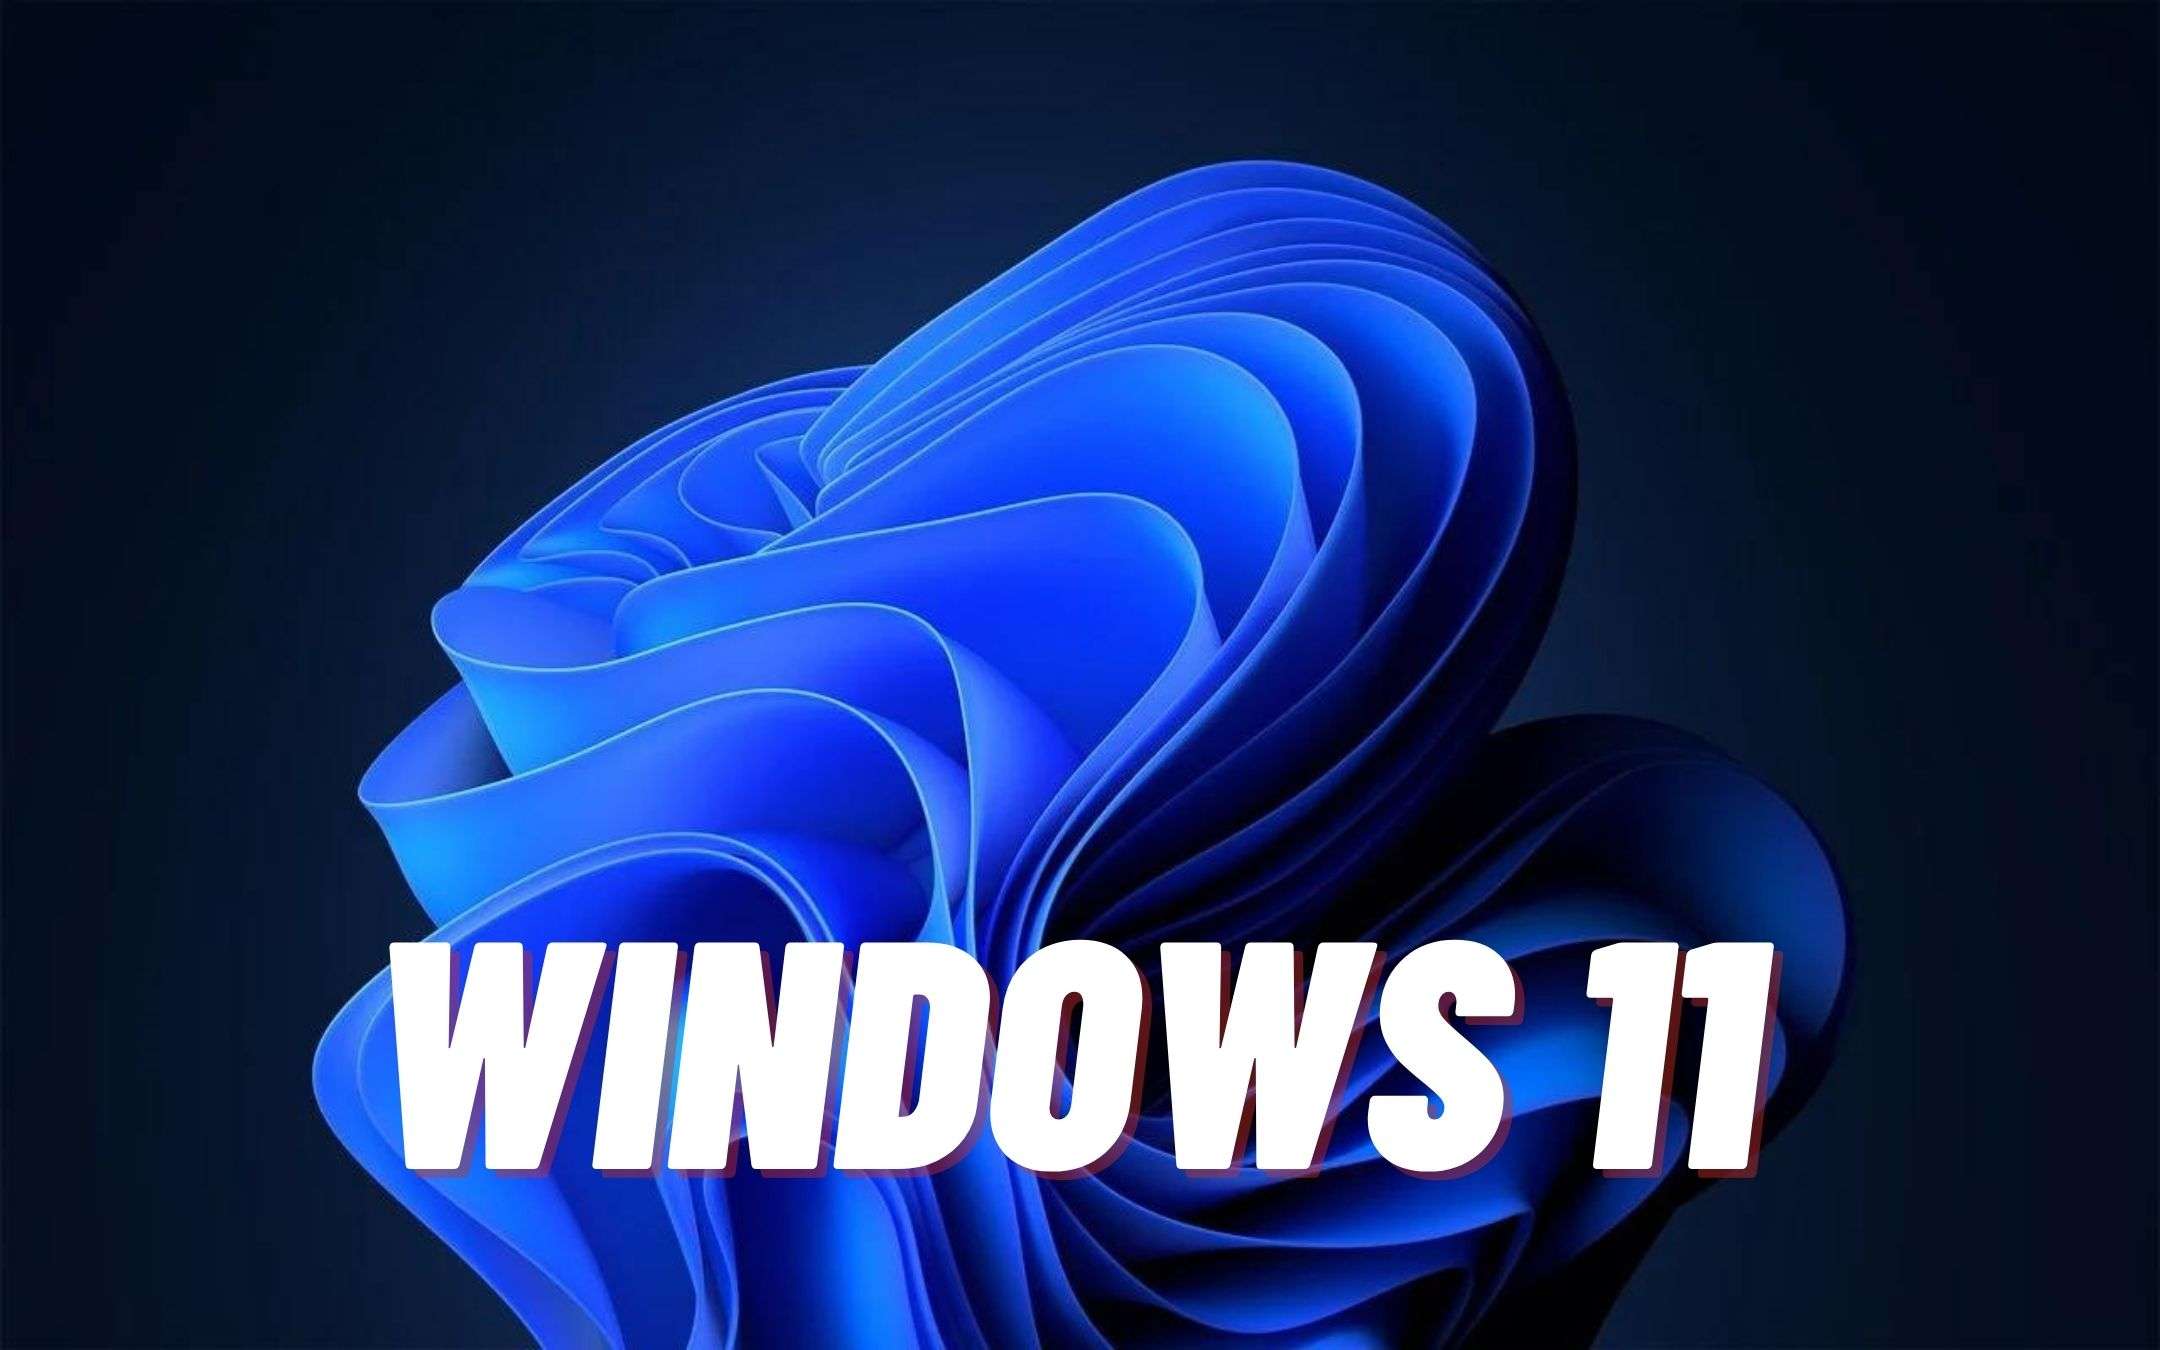 Windows 11: ecco come sarà l'interfaccia (FOTO)